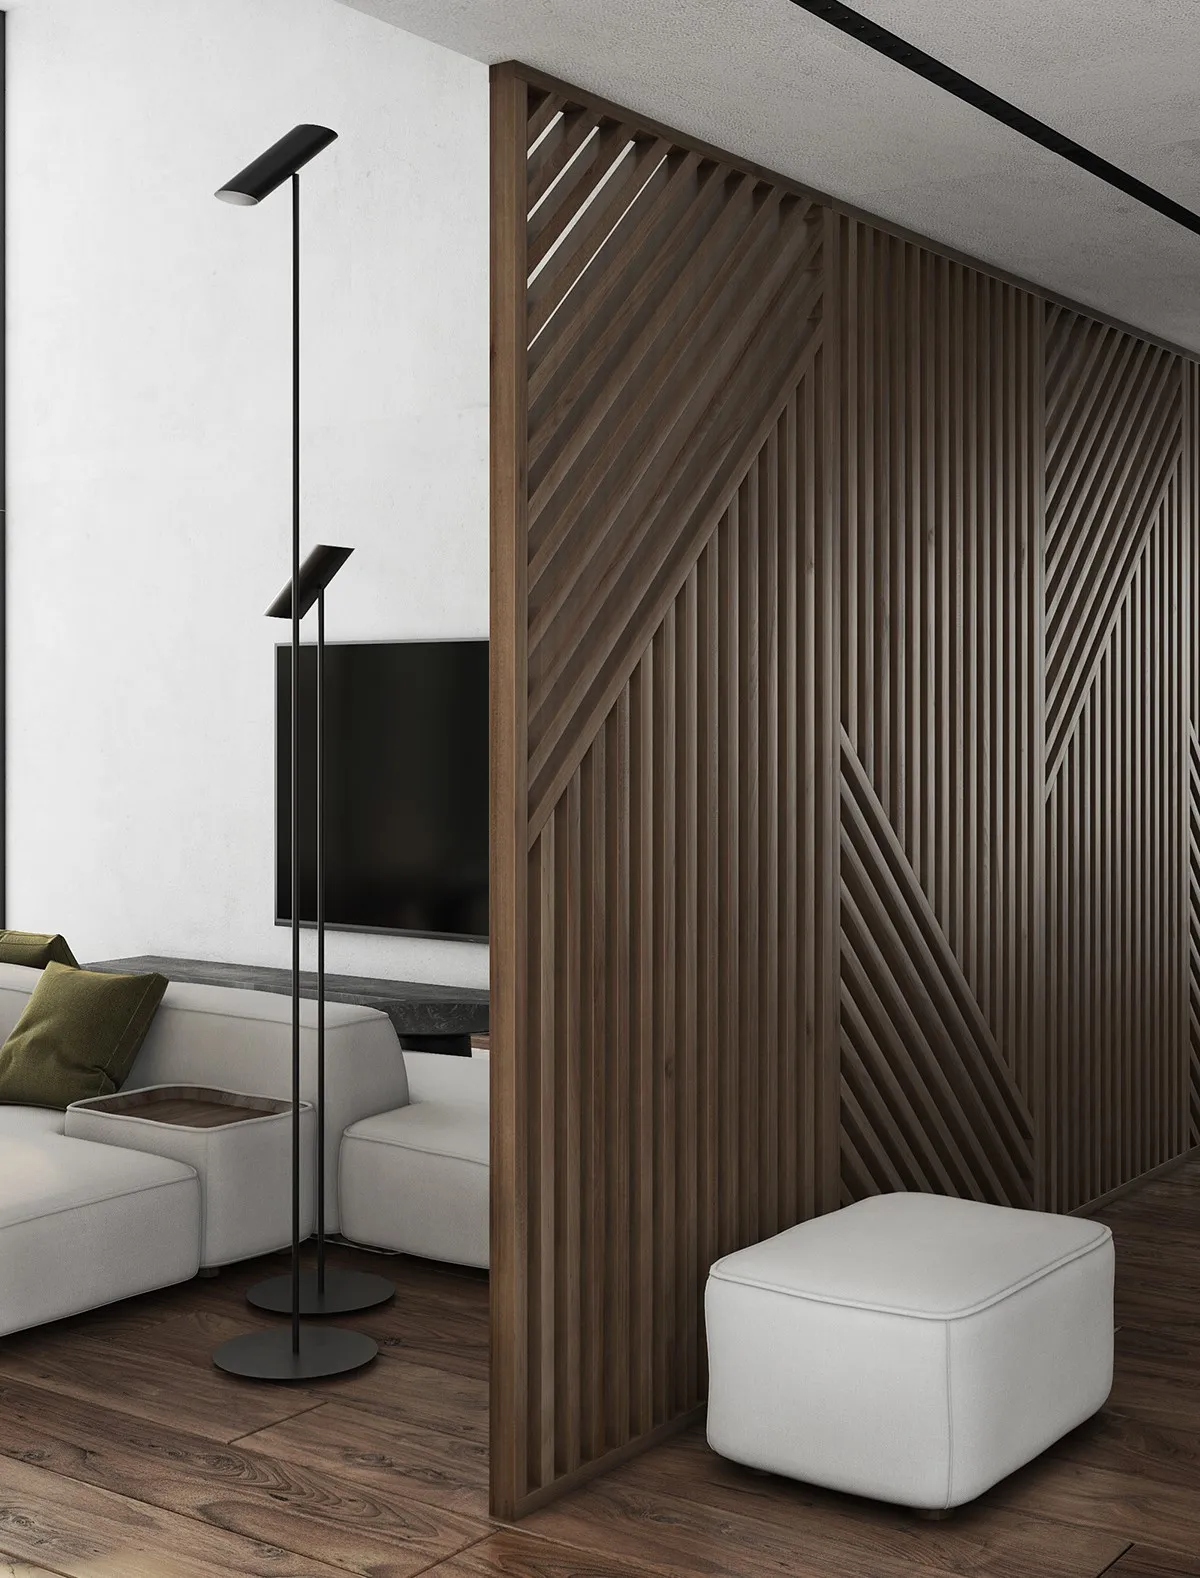 Mẫu vách ngăn bằng gỗ hiện đại cho phòng khách